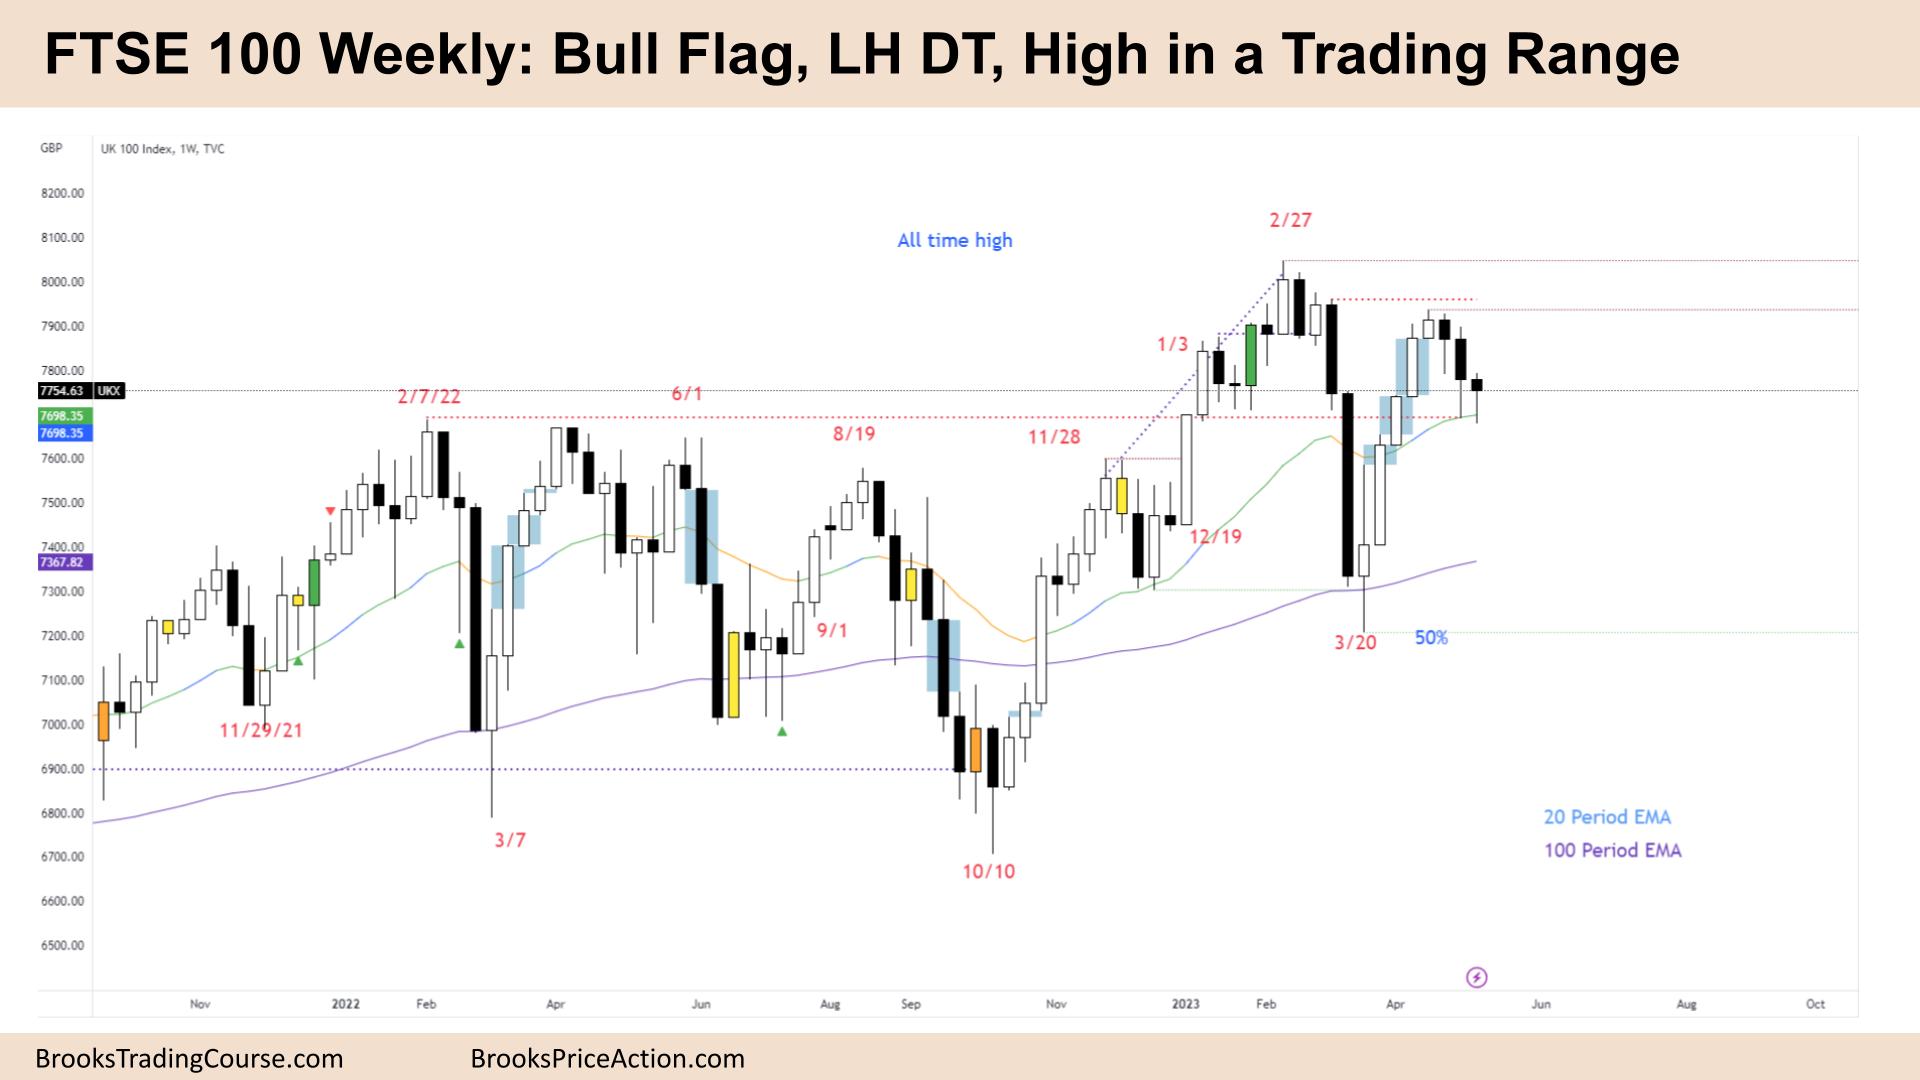 FTSE 100 Bull Flag, LH DT, High in a Trading Range